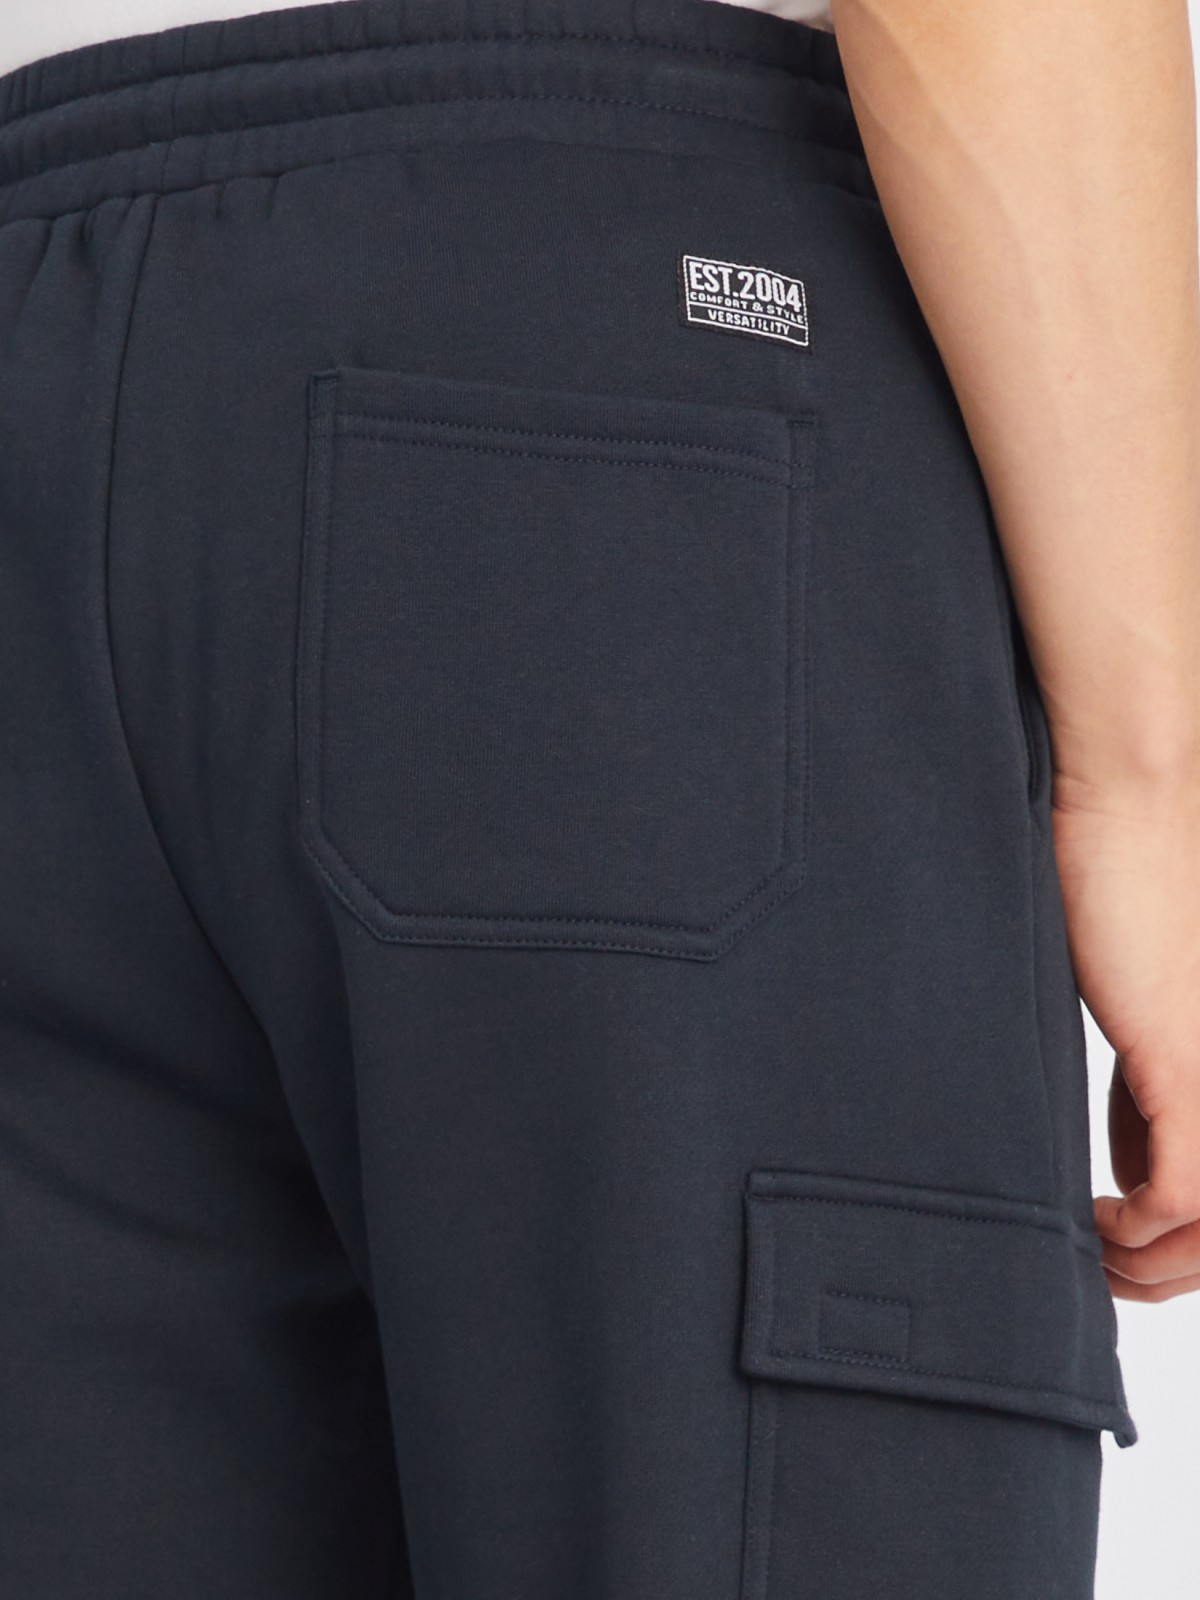 Утеплённые брюки-джоггеры на резинке с карманами карго zolla 213347675043, цвет темно-синий, размер M - фото 6